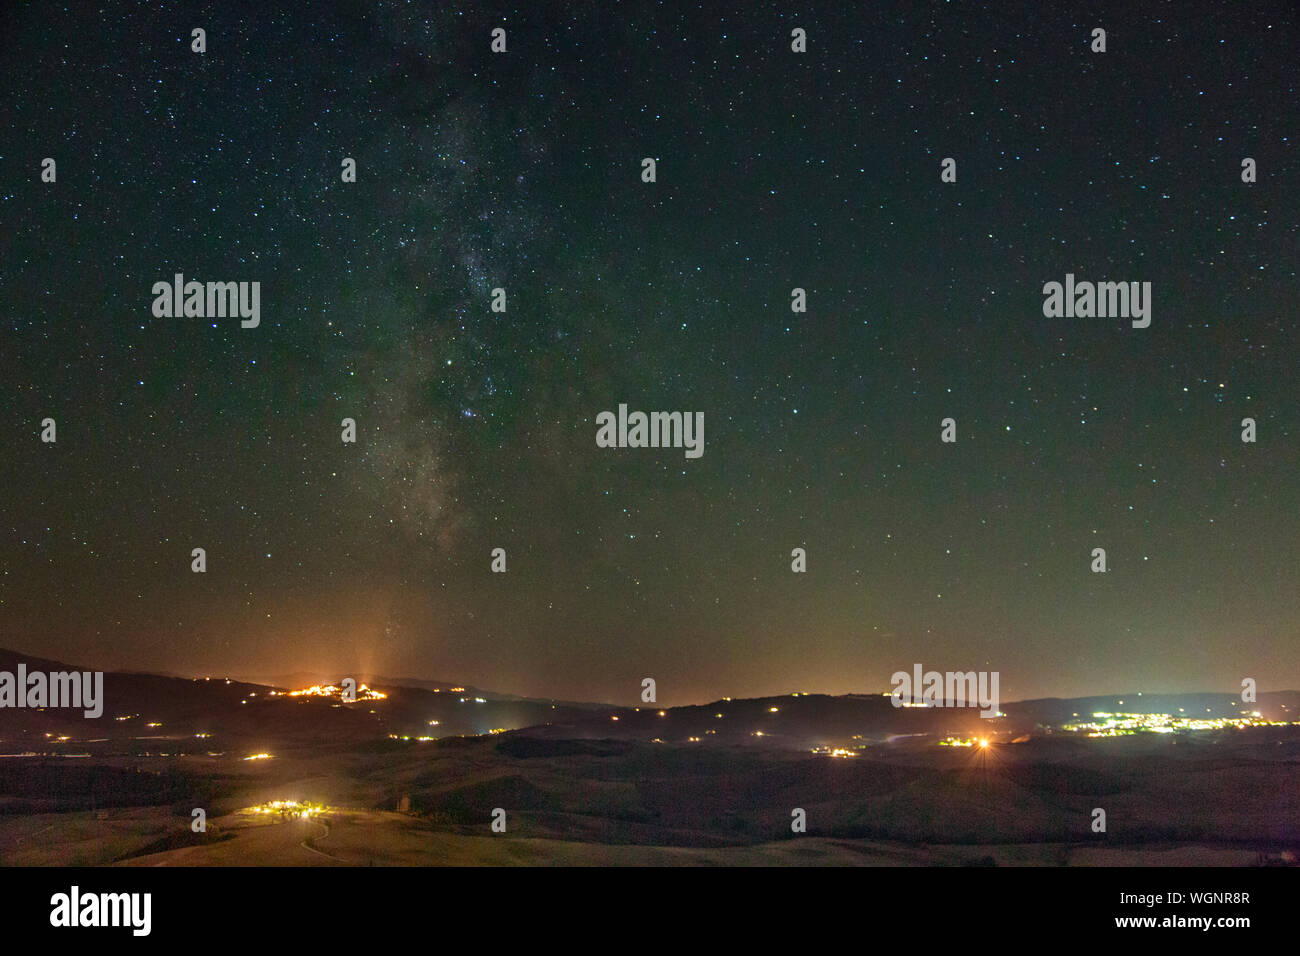 Milky Way over Abruzzo, Italy Stock Photo